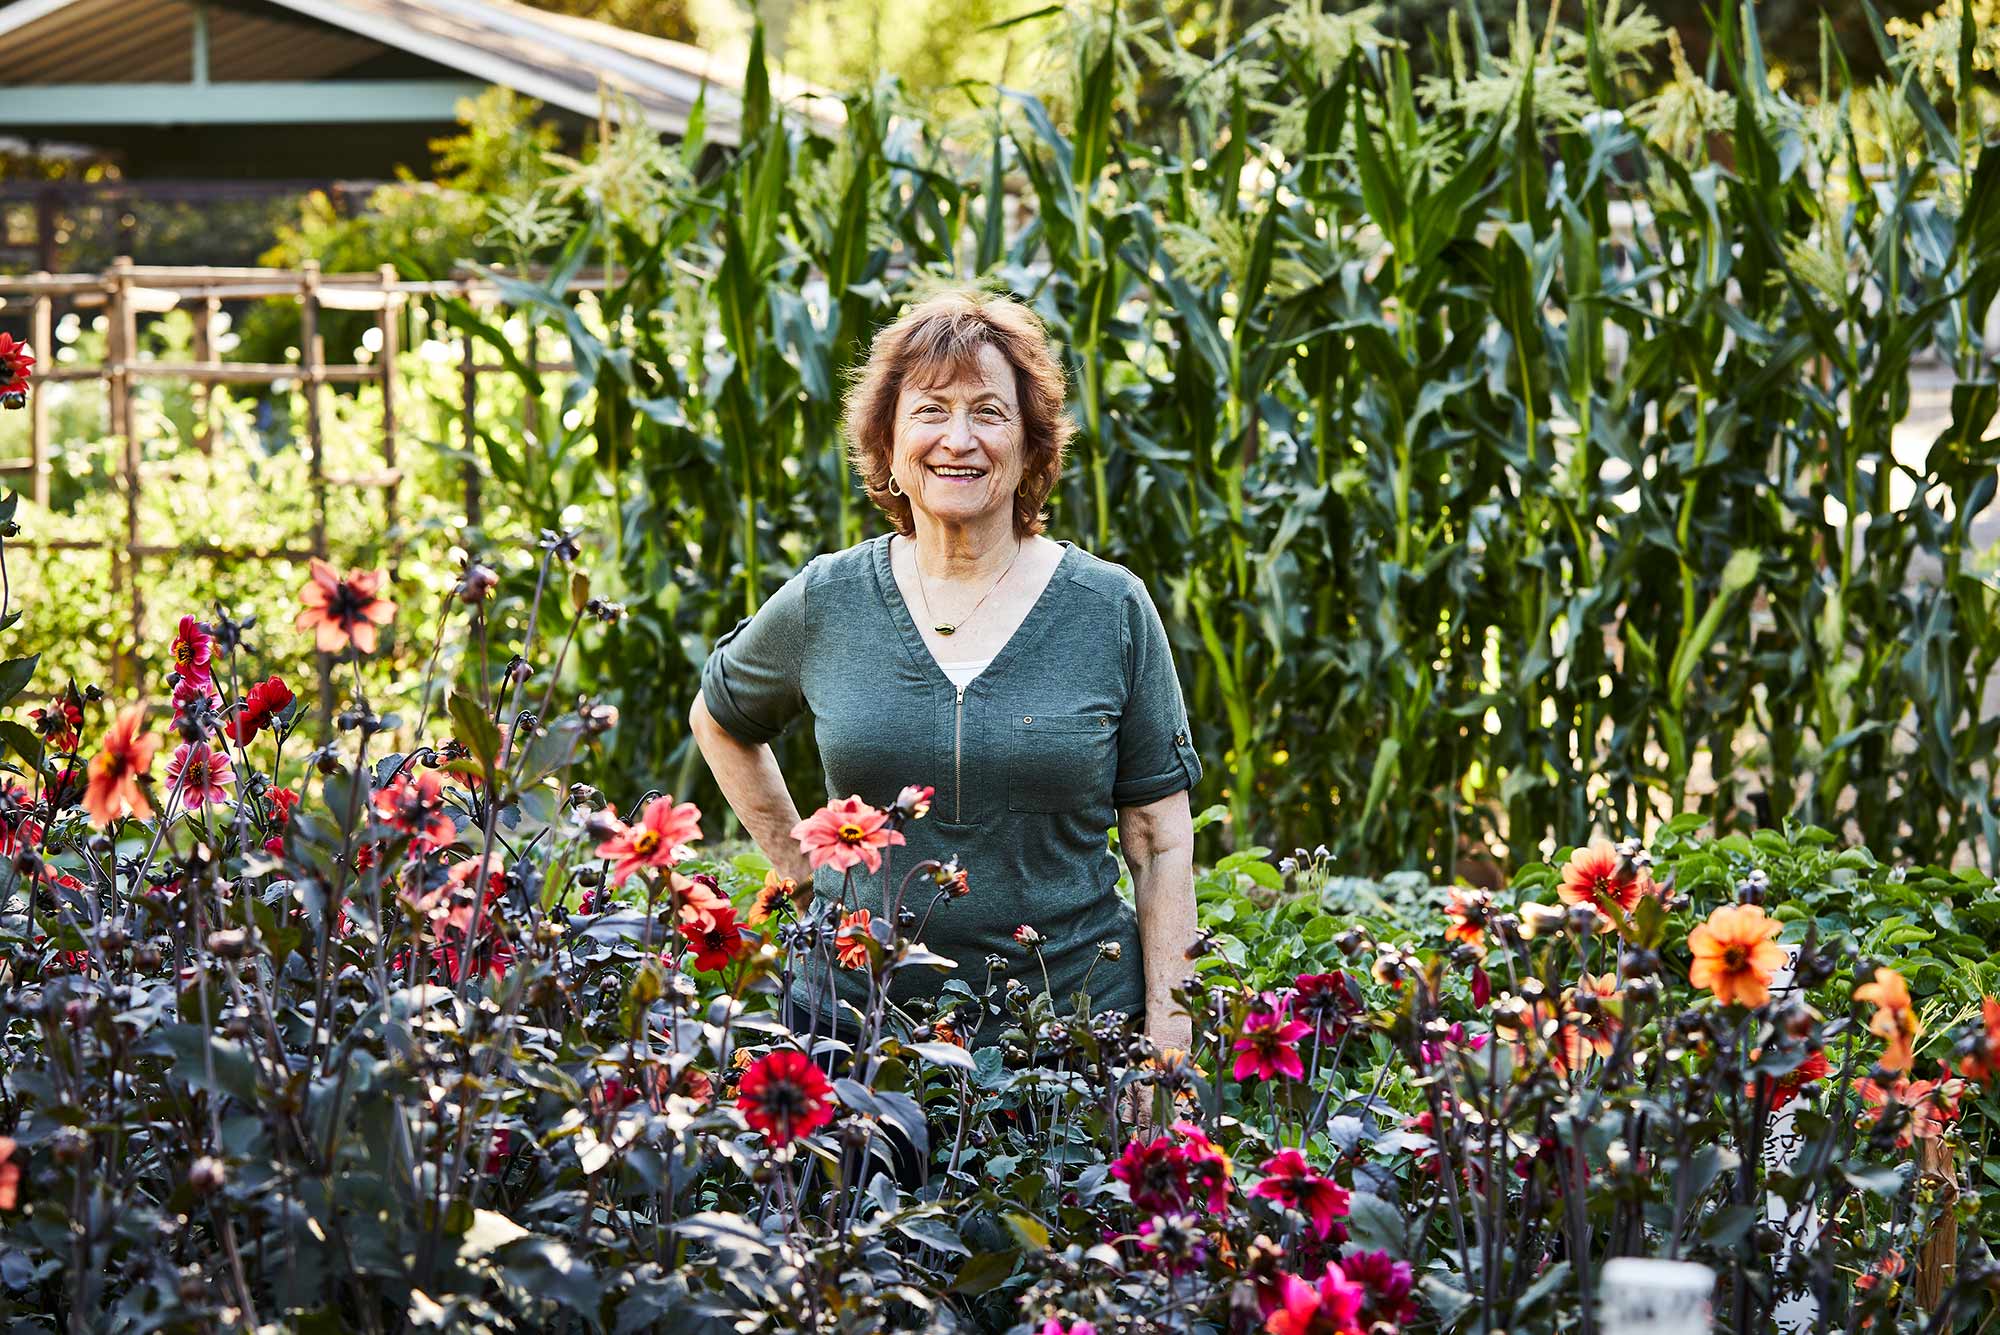 Seed Pioneer Renee Shepherd and the Gardening Life